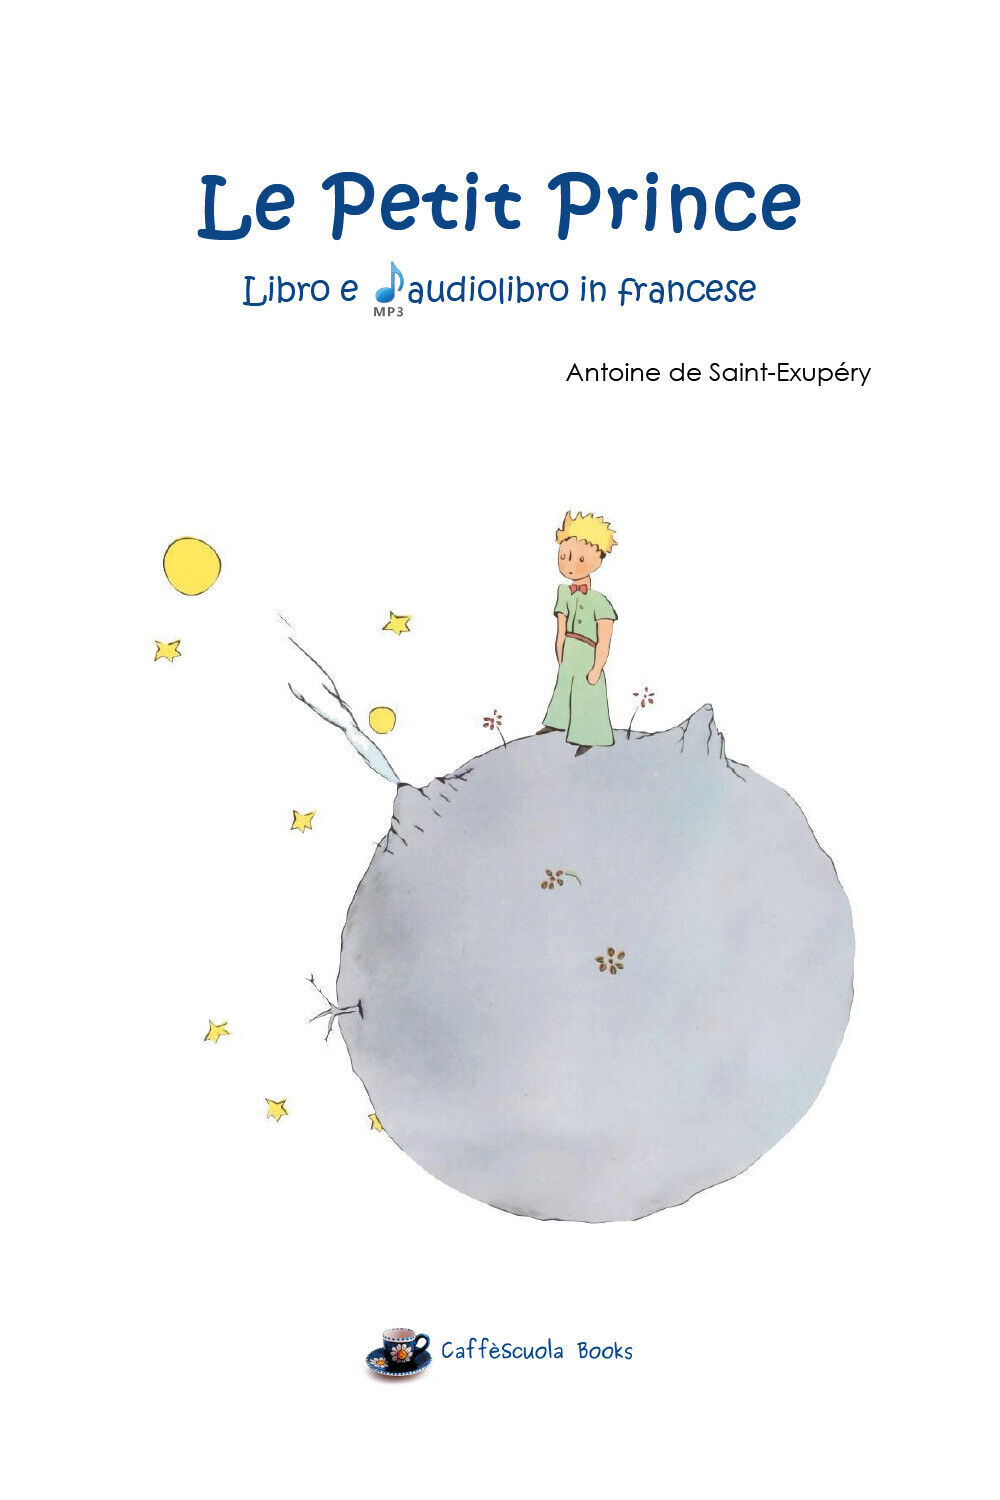 Le Petit Prince - Il libro e L'audiolibro in francese